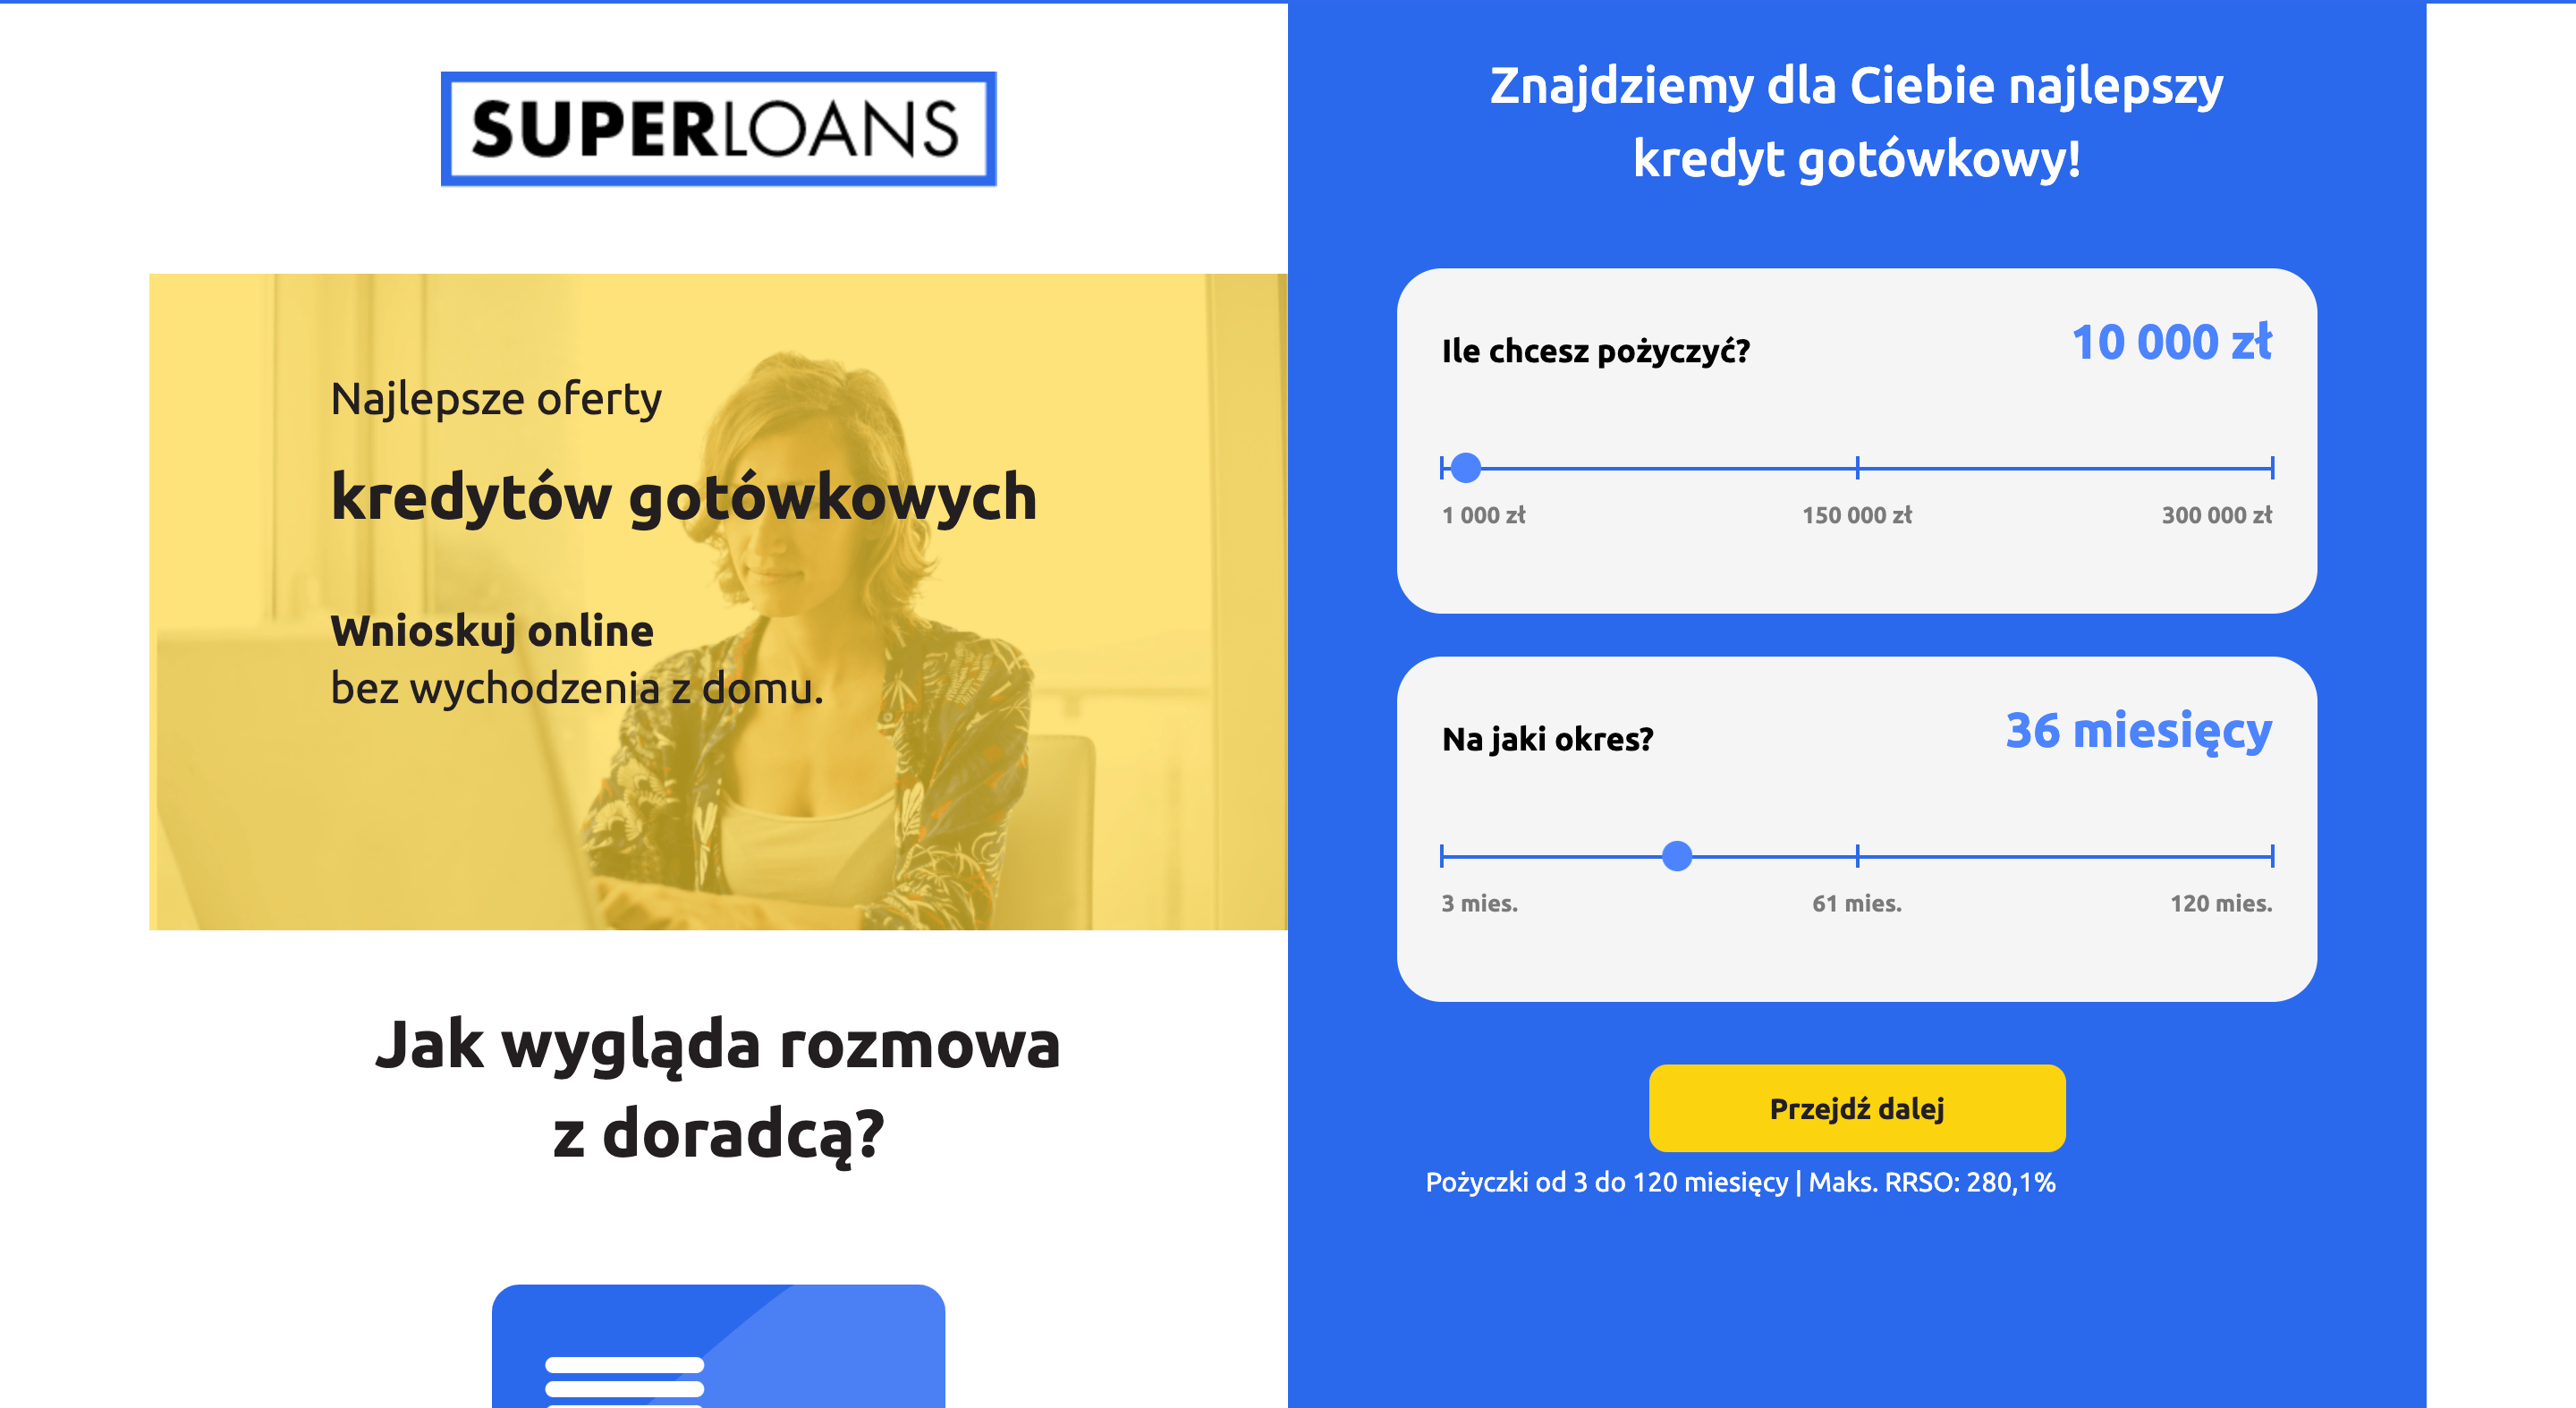 Superloans - Pożyczki do 300 000 zł.